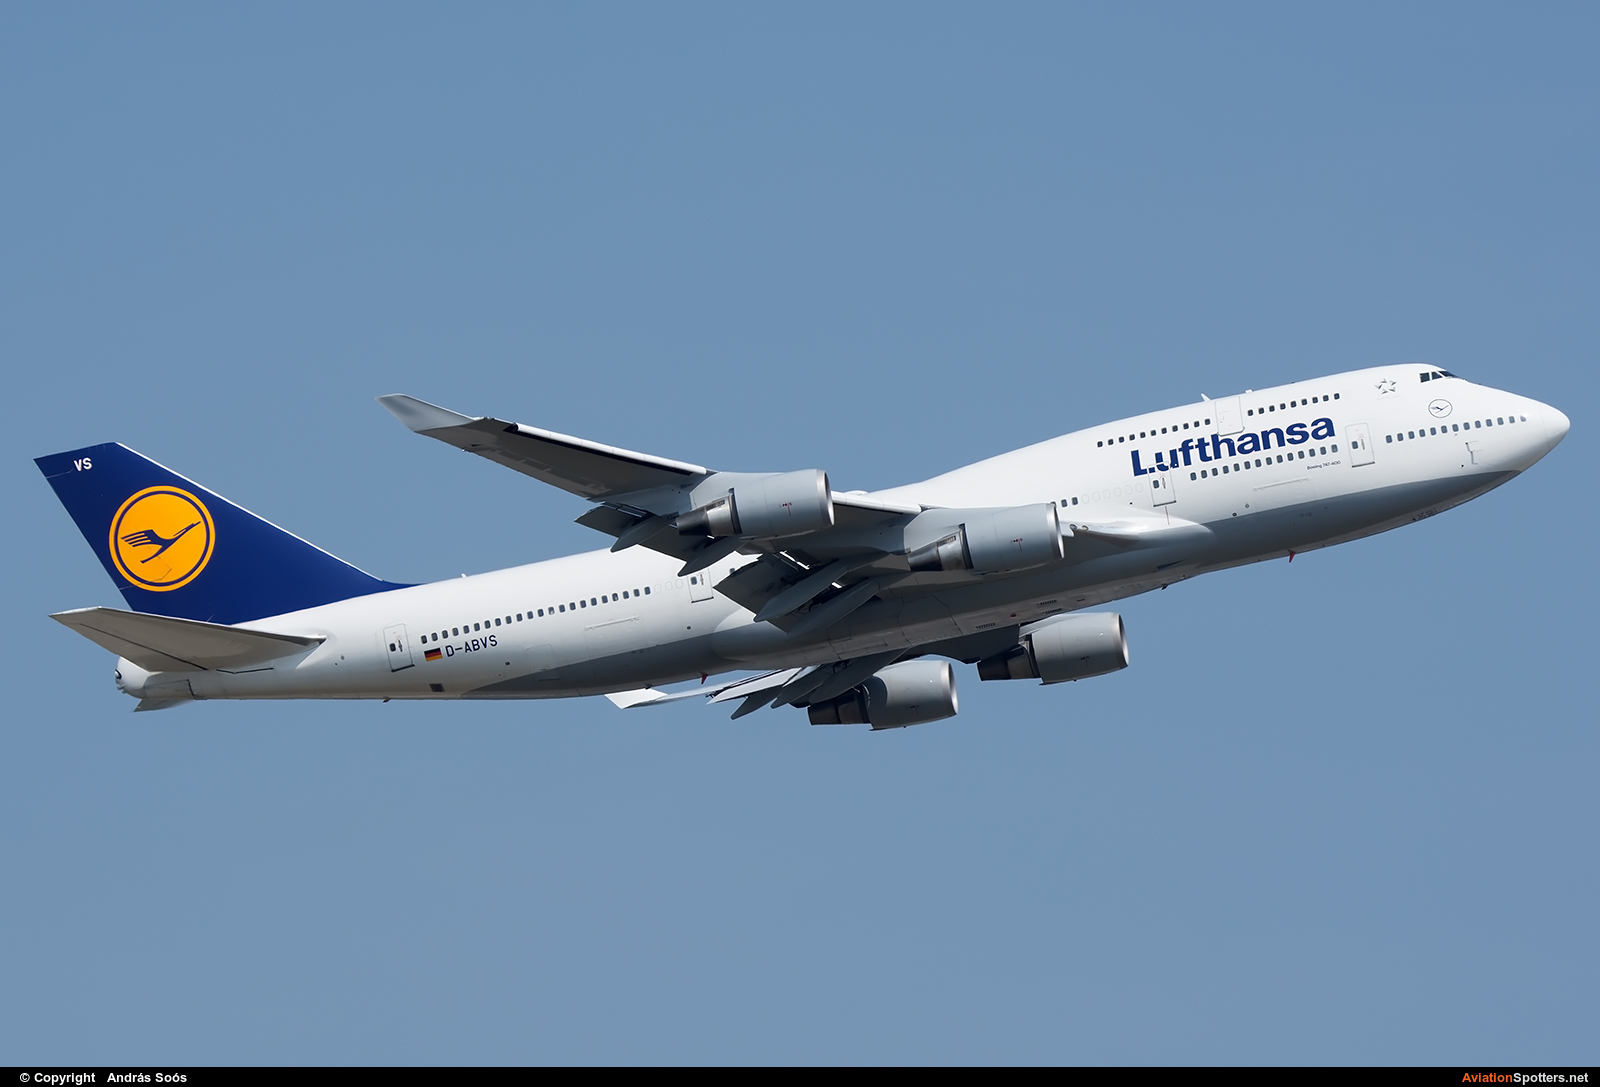 Lufthansa  -  747-400  (D-ABVS) By András Soós (sas1965)